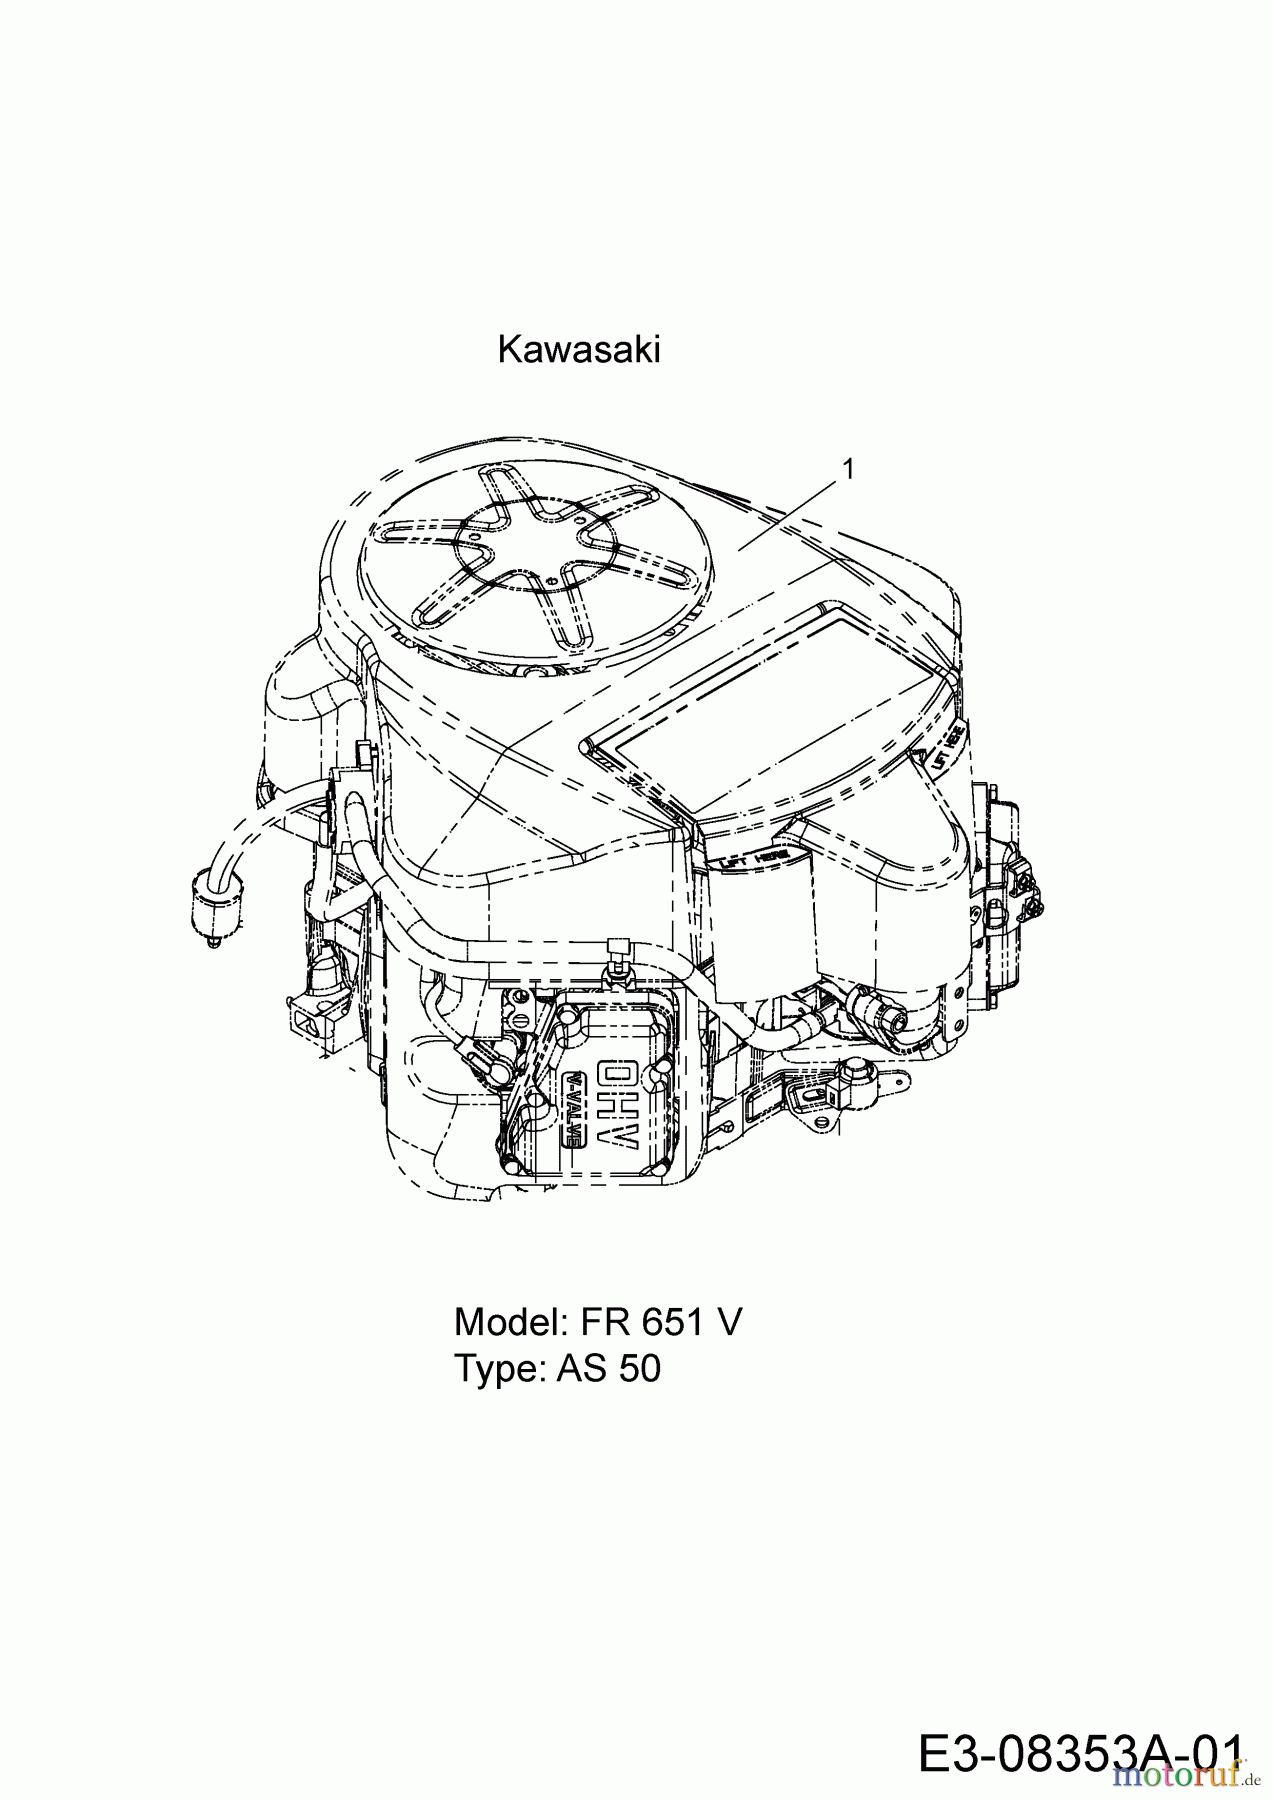  Massey Ferguson Zero Turn MF 48-22 FMZ 17BI4BFY695  (2014) Engine Kawasaki